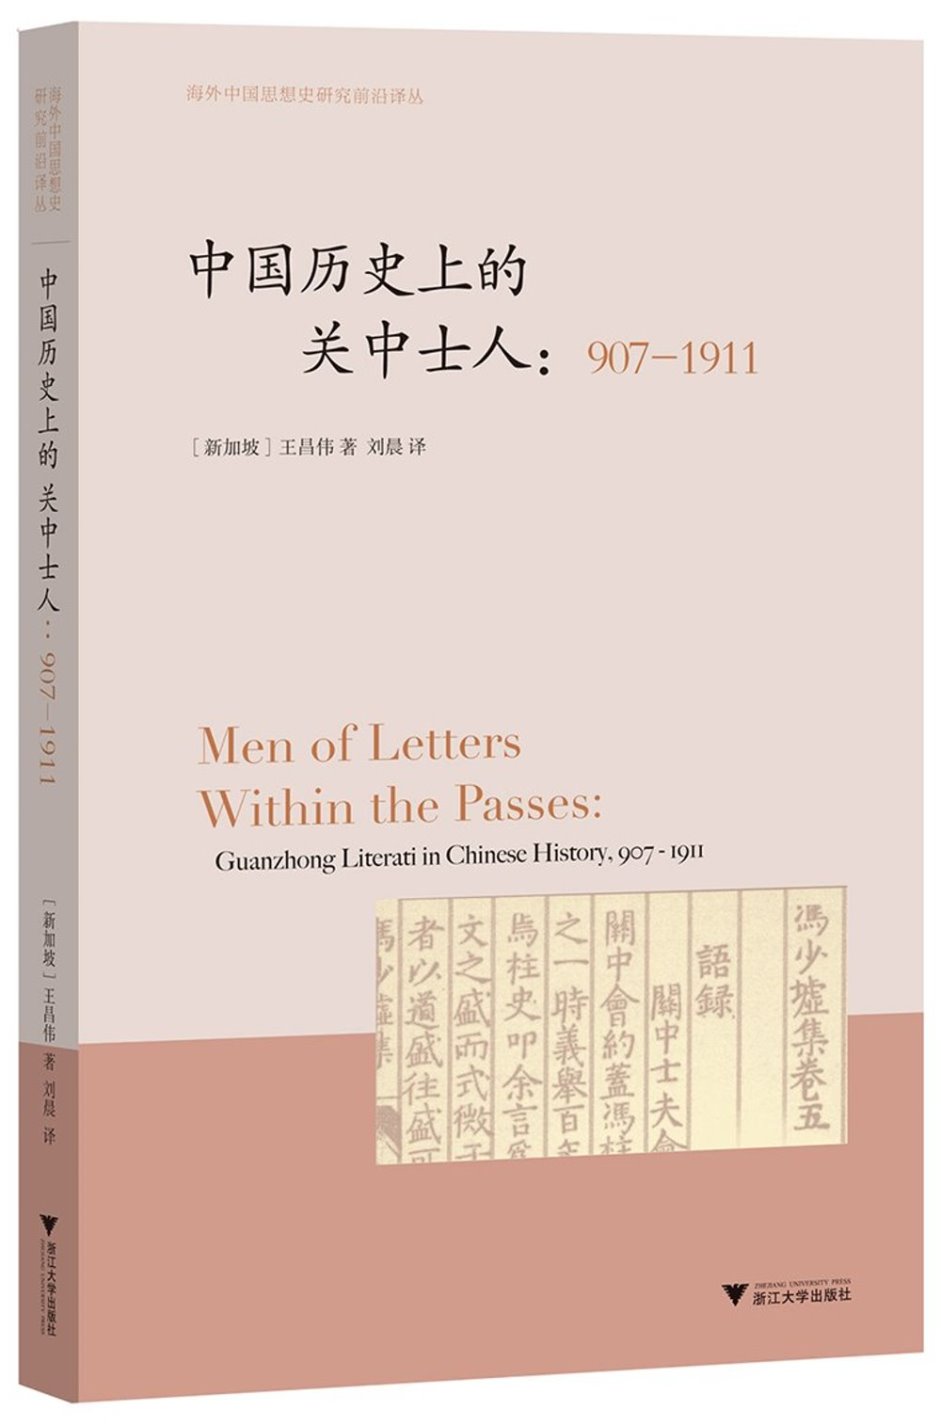 中國歷史上的關中士人（907-1911）